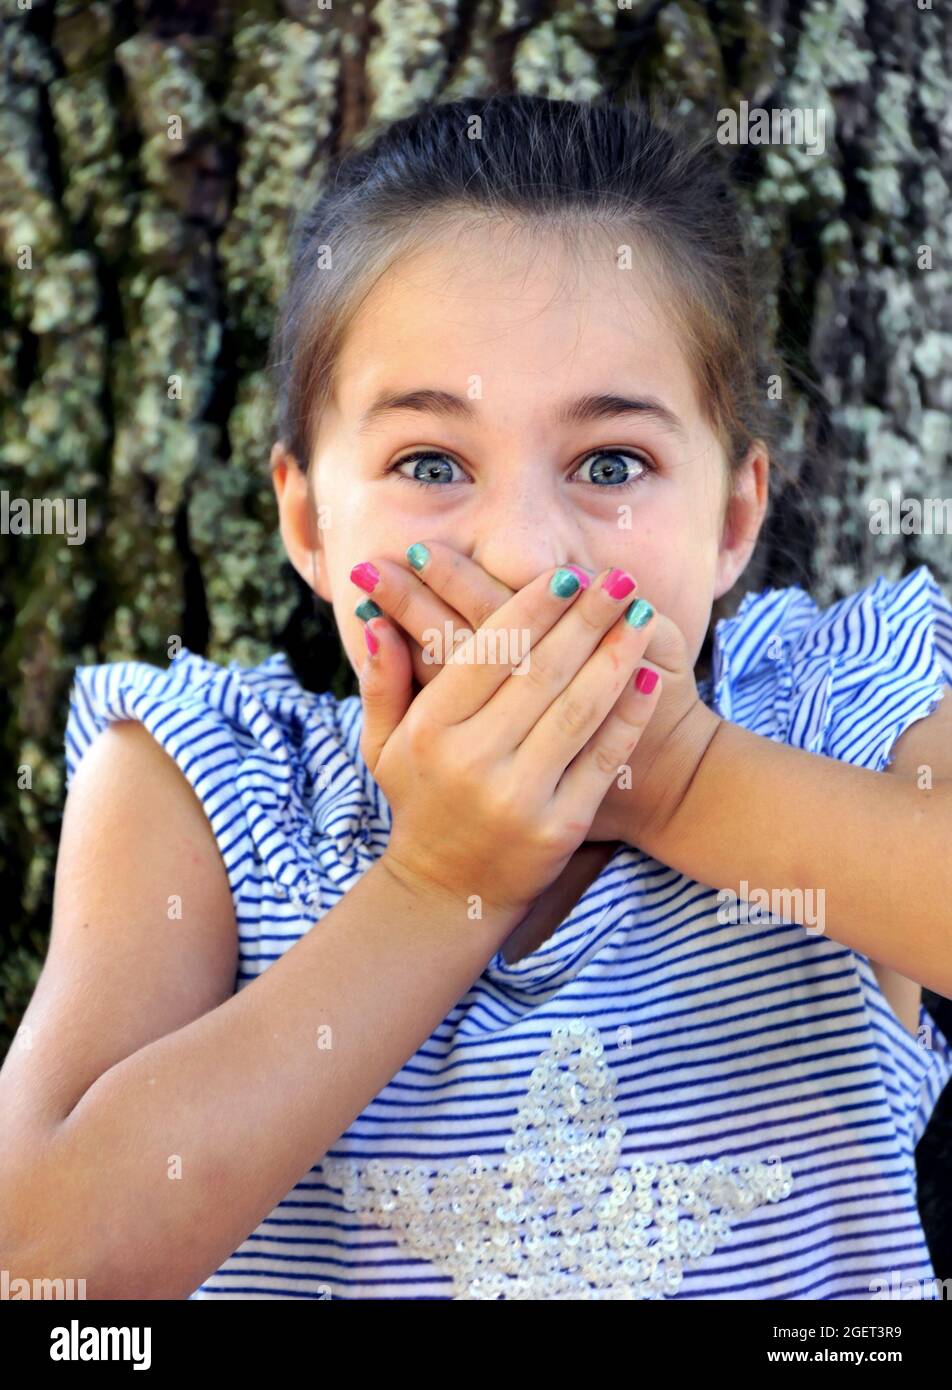 Das kleine Mädchen hält sich in ihrem Überraschungsschrei fest, während sie ihre Hände über ihren Mund hält. Sie sitzt draußen an einem Baum, und das Foto ist aus der Nähe. Stockfoto